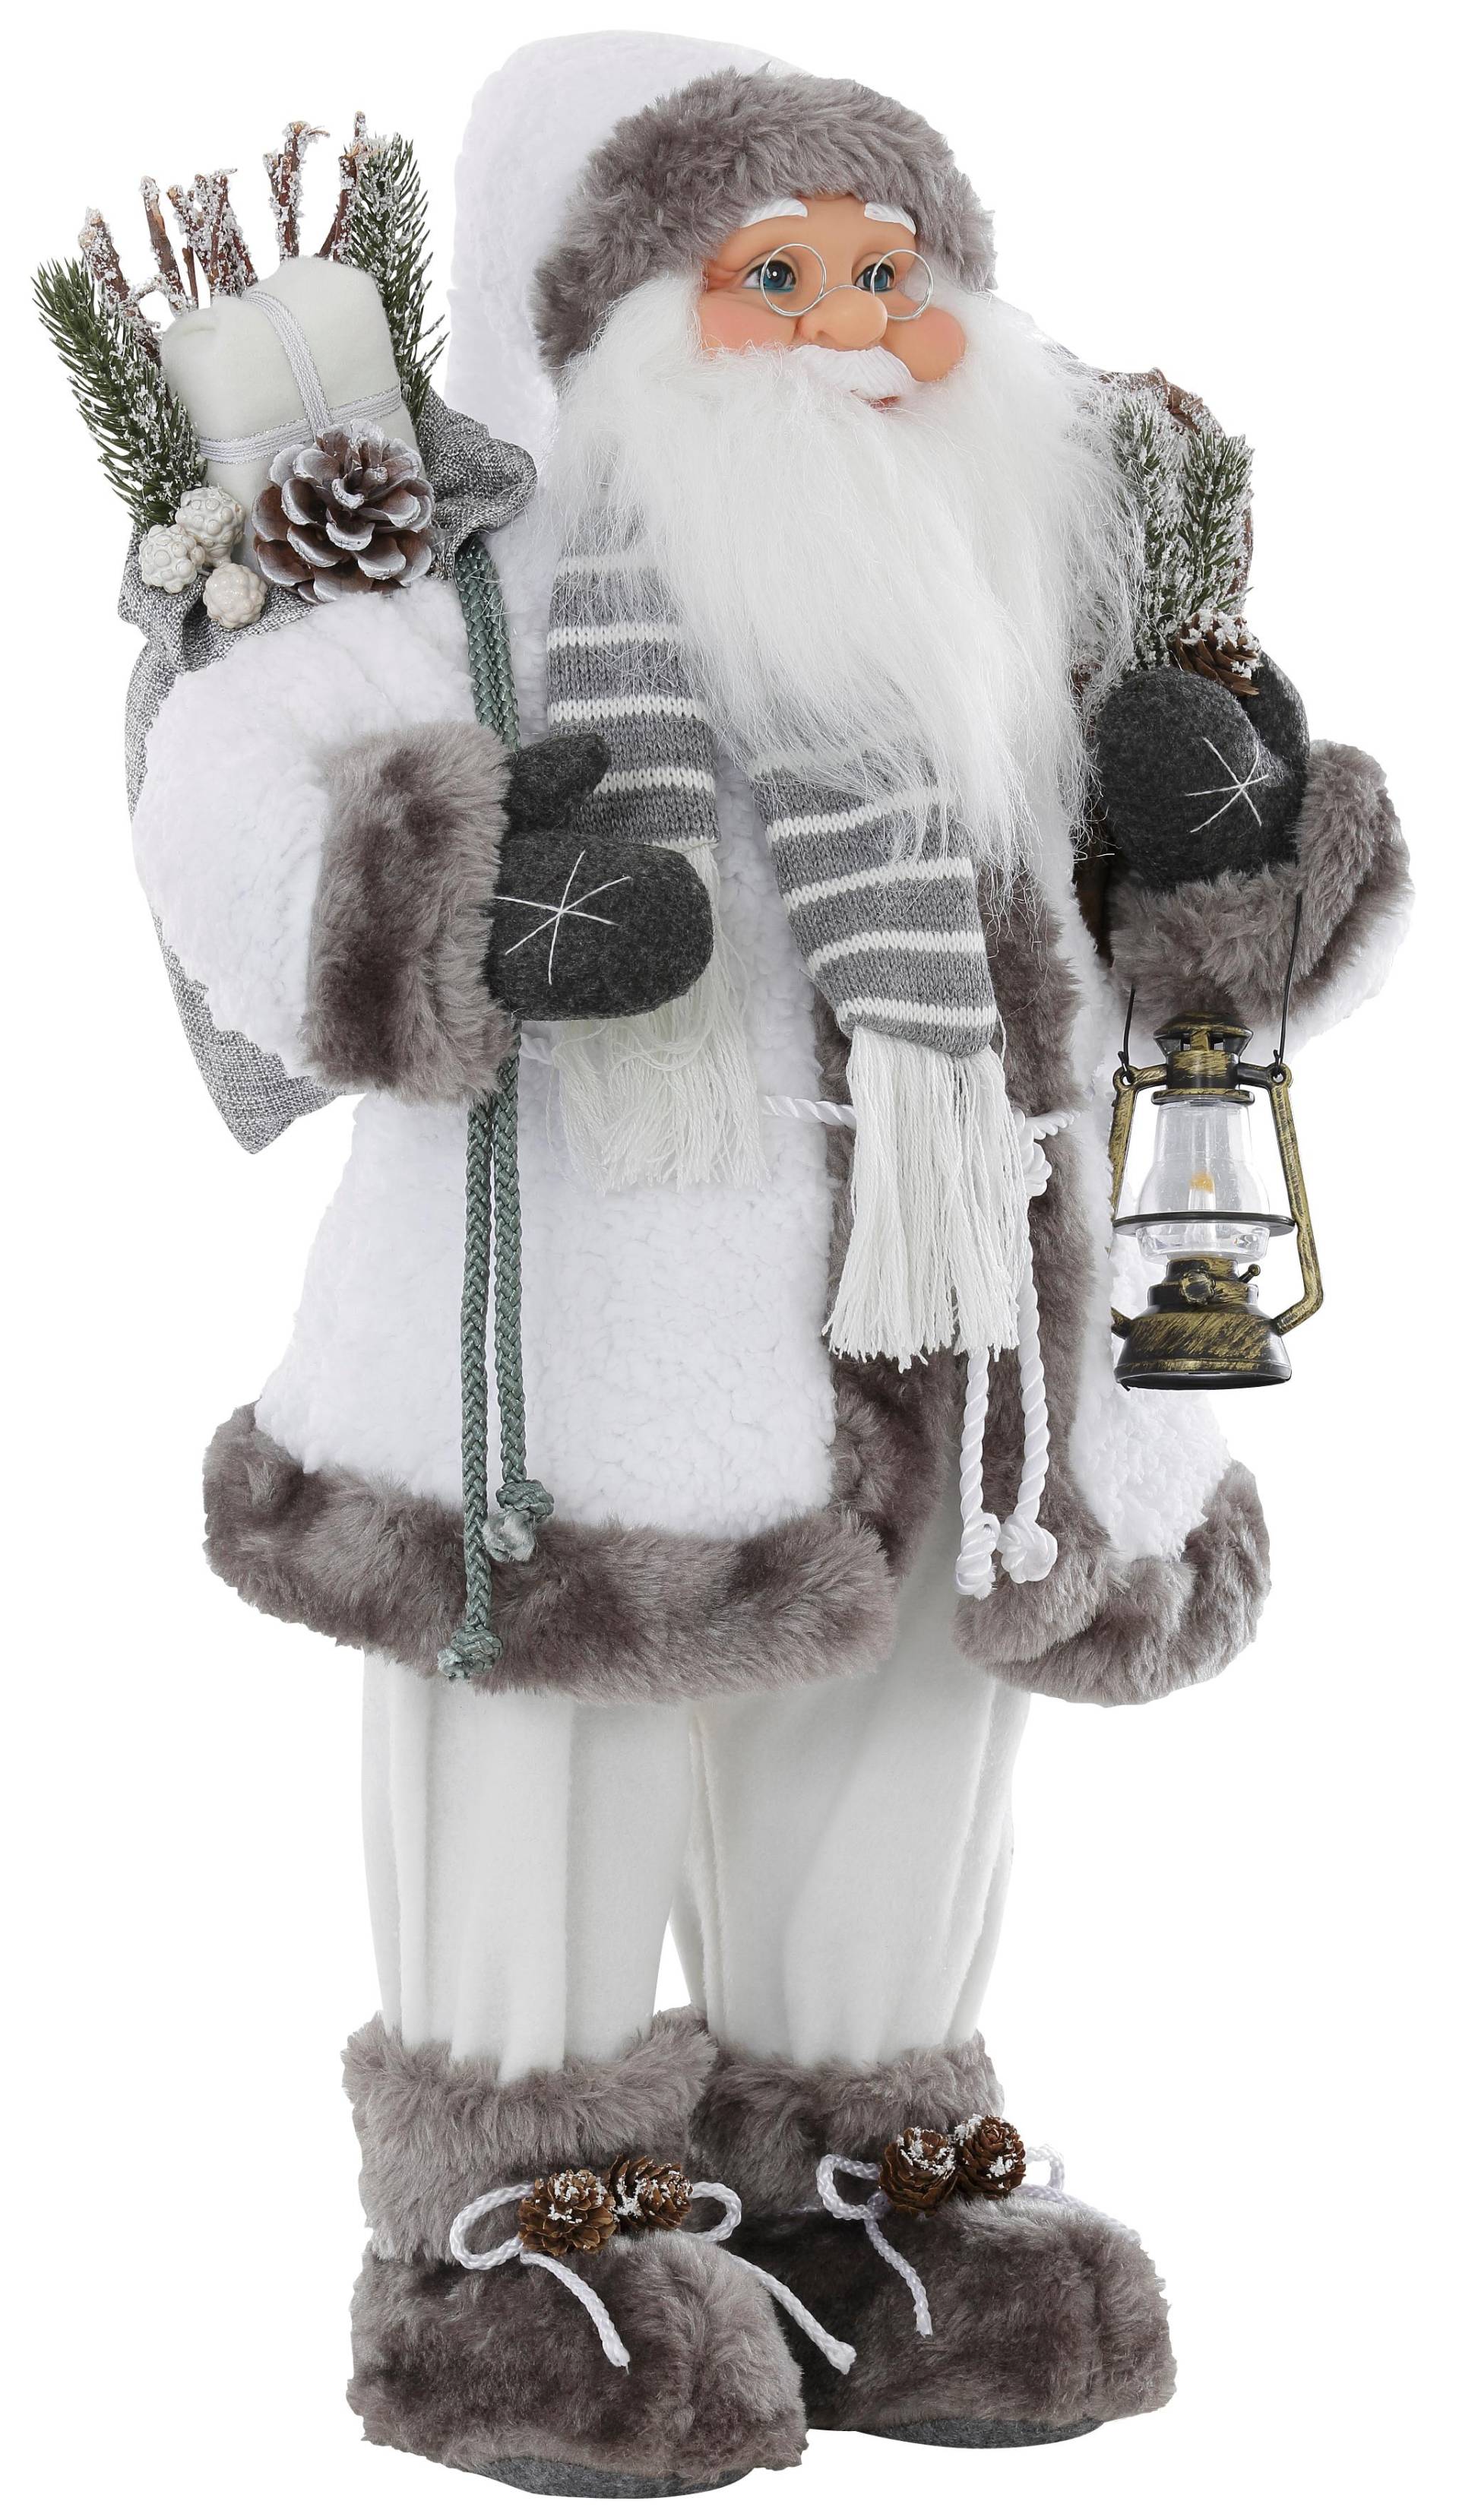 HOSSNER - HOMECOLLECTION Weihnachtsmann »Santa mit weissem Mantel und Laterne« von HOSSNER - HOMECOLLECTION